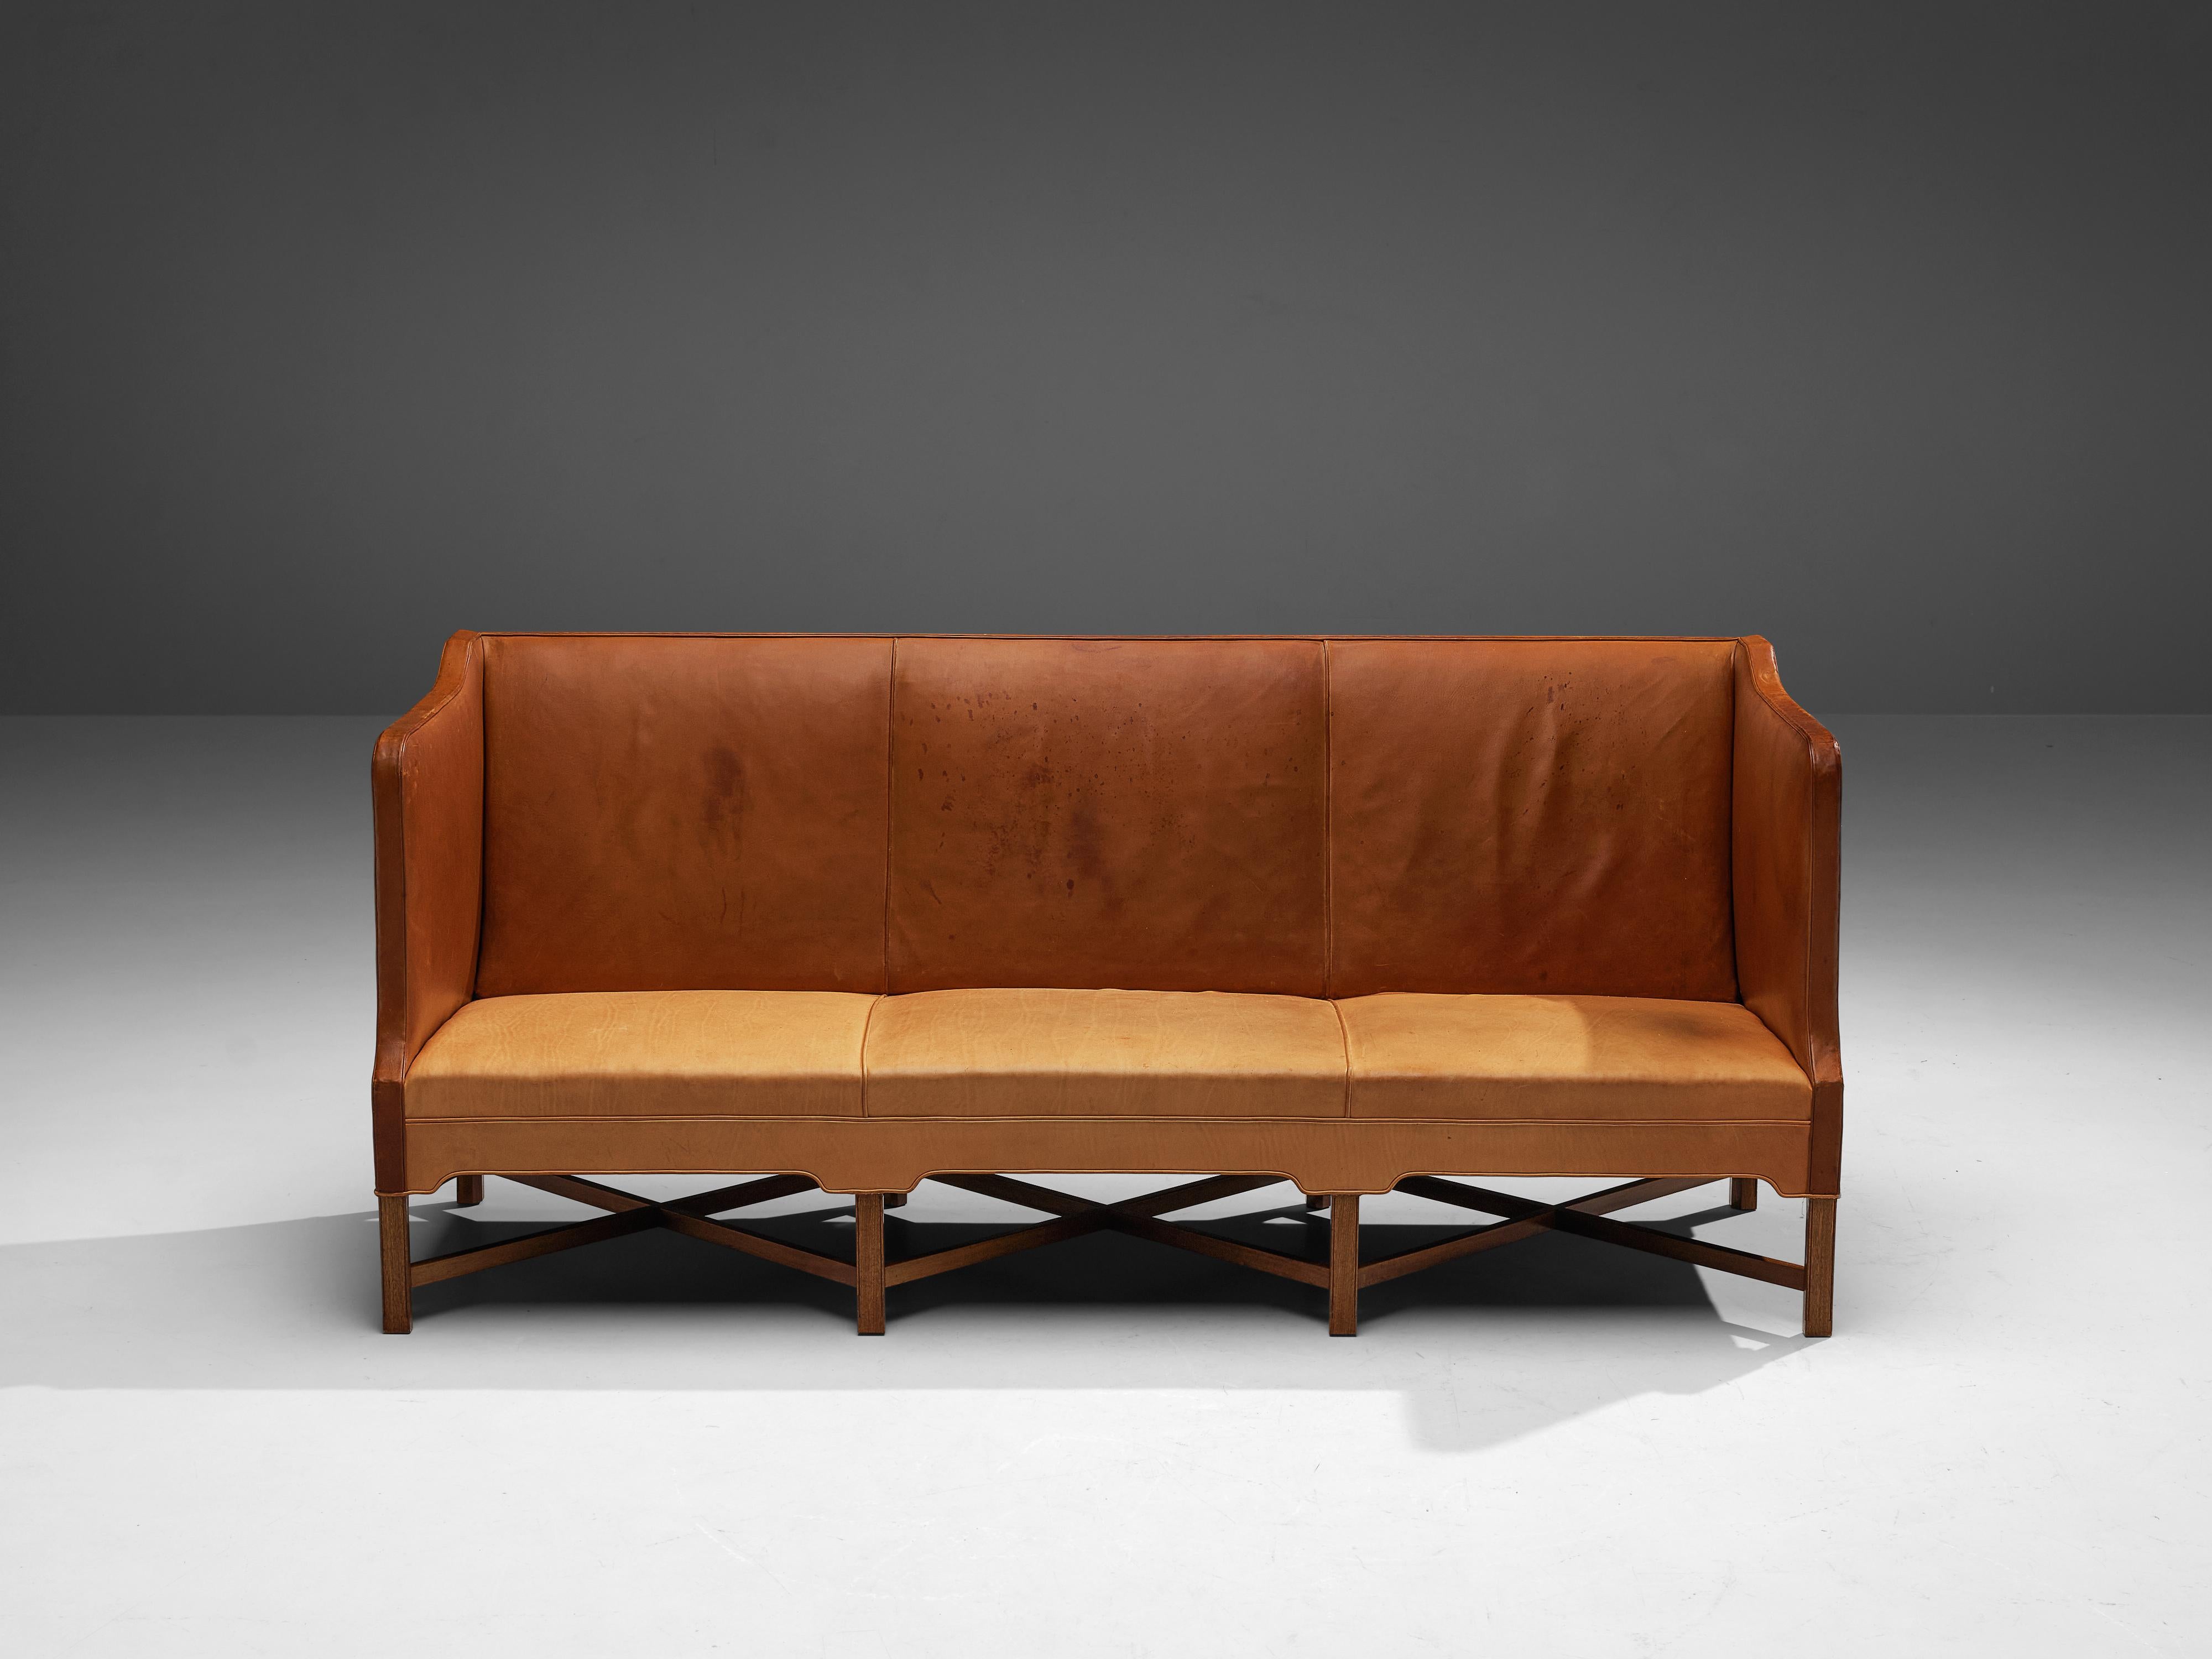 Danish Kaare Klint for Rud Rasmussen Sofa in Cognac Leather